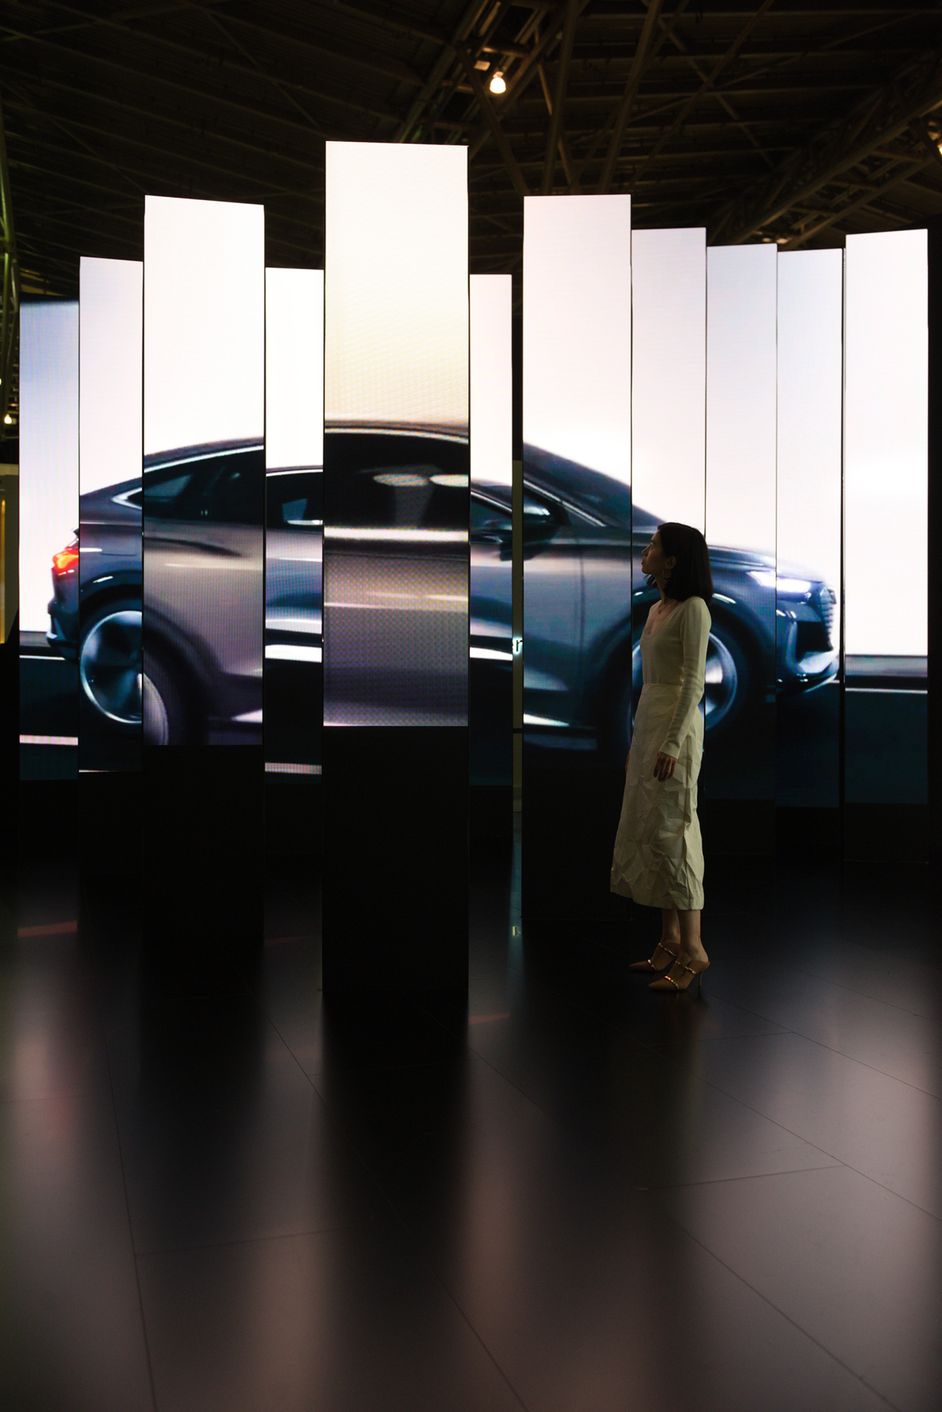 Der Audi Q4 e-tron concept als Design-Puzzle: Wenn der Besucher richtig steht, ergeben die verschiedenen Bildschirme das zukunftsweisende Konzeptauto.